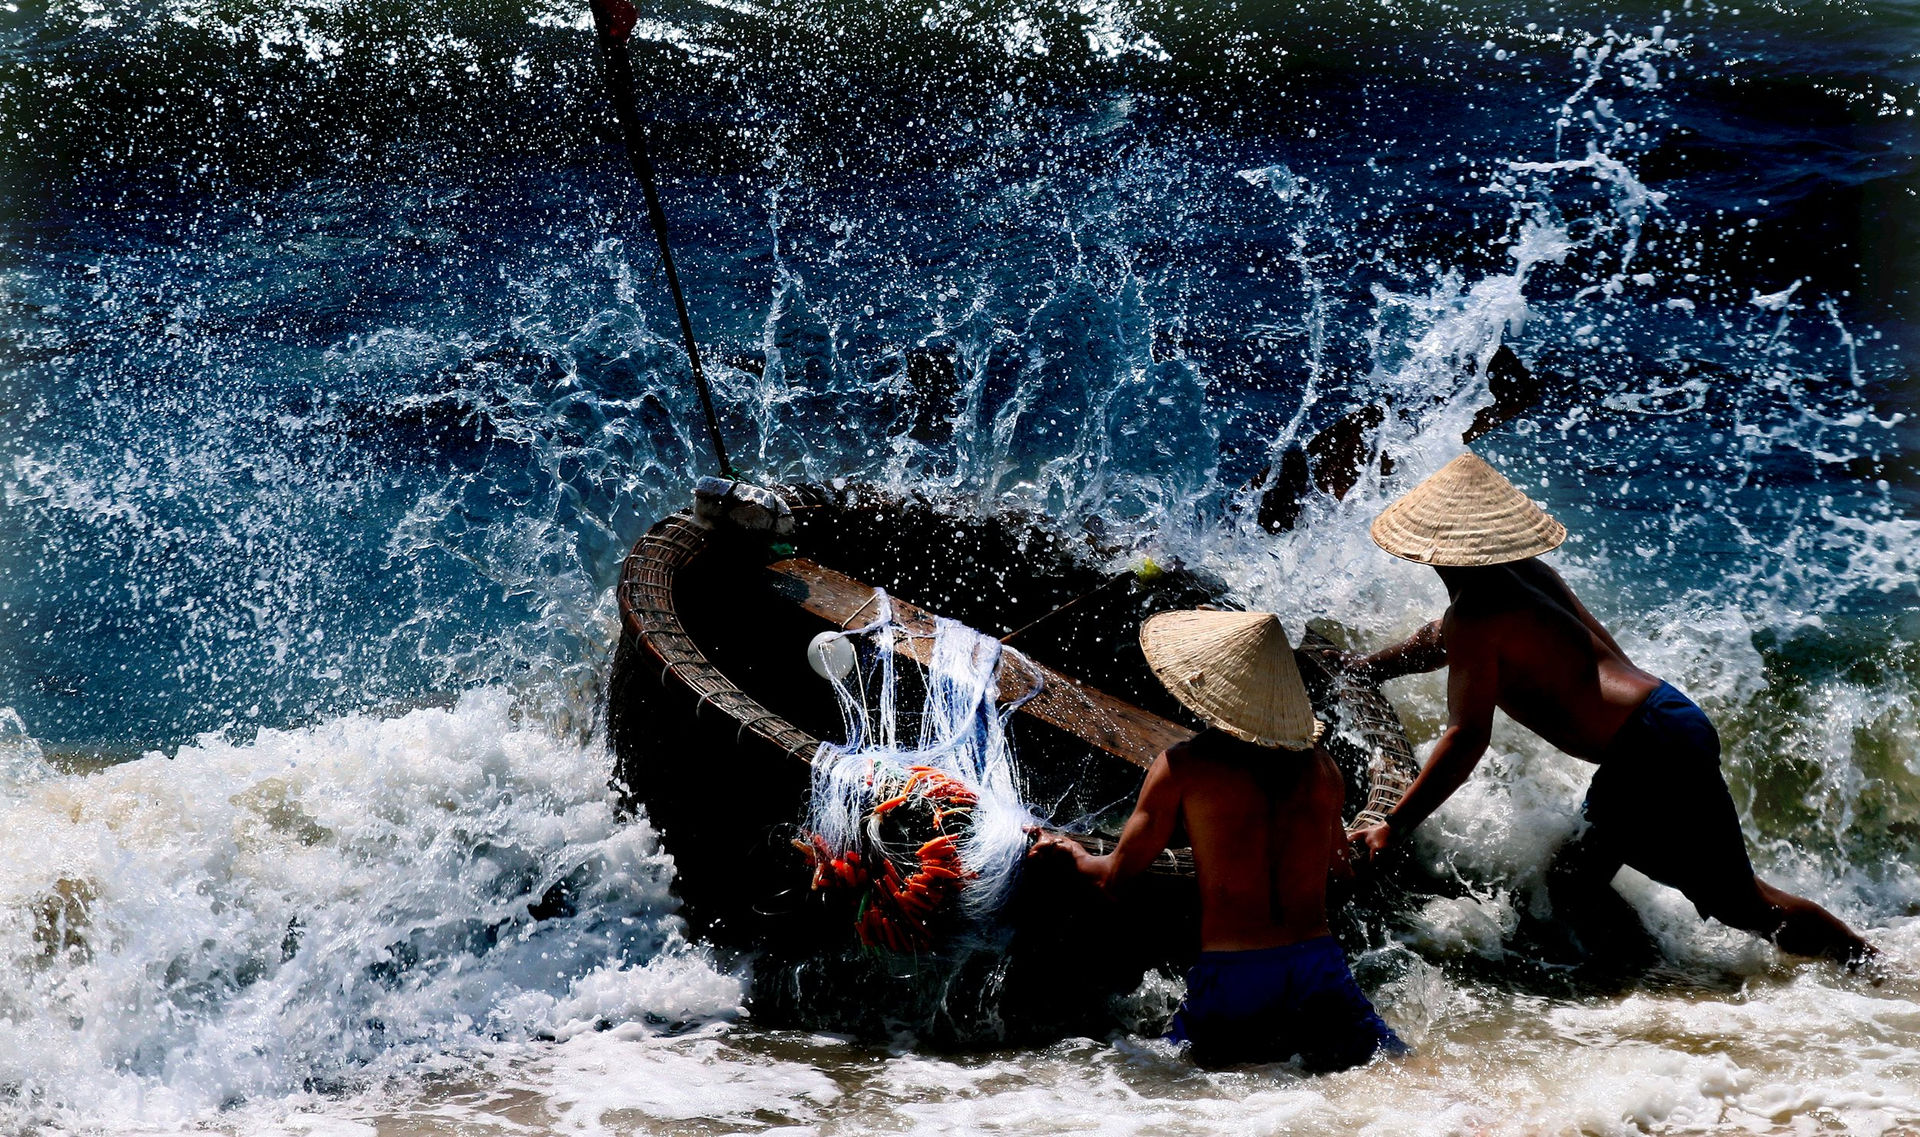 Leo lên thuyền thúng của dân làng chài Bình Thuận chèo thử, thúng cứ quay vòng tròn - Ảnh 1.